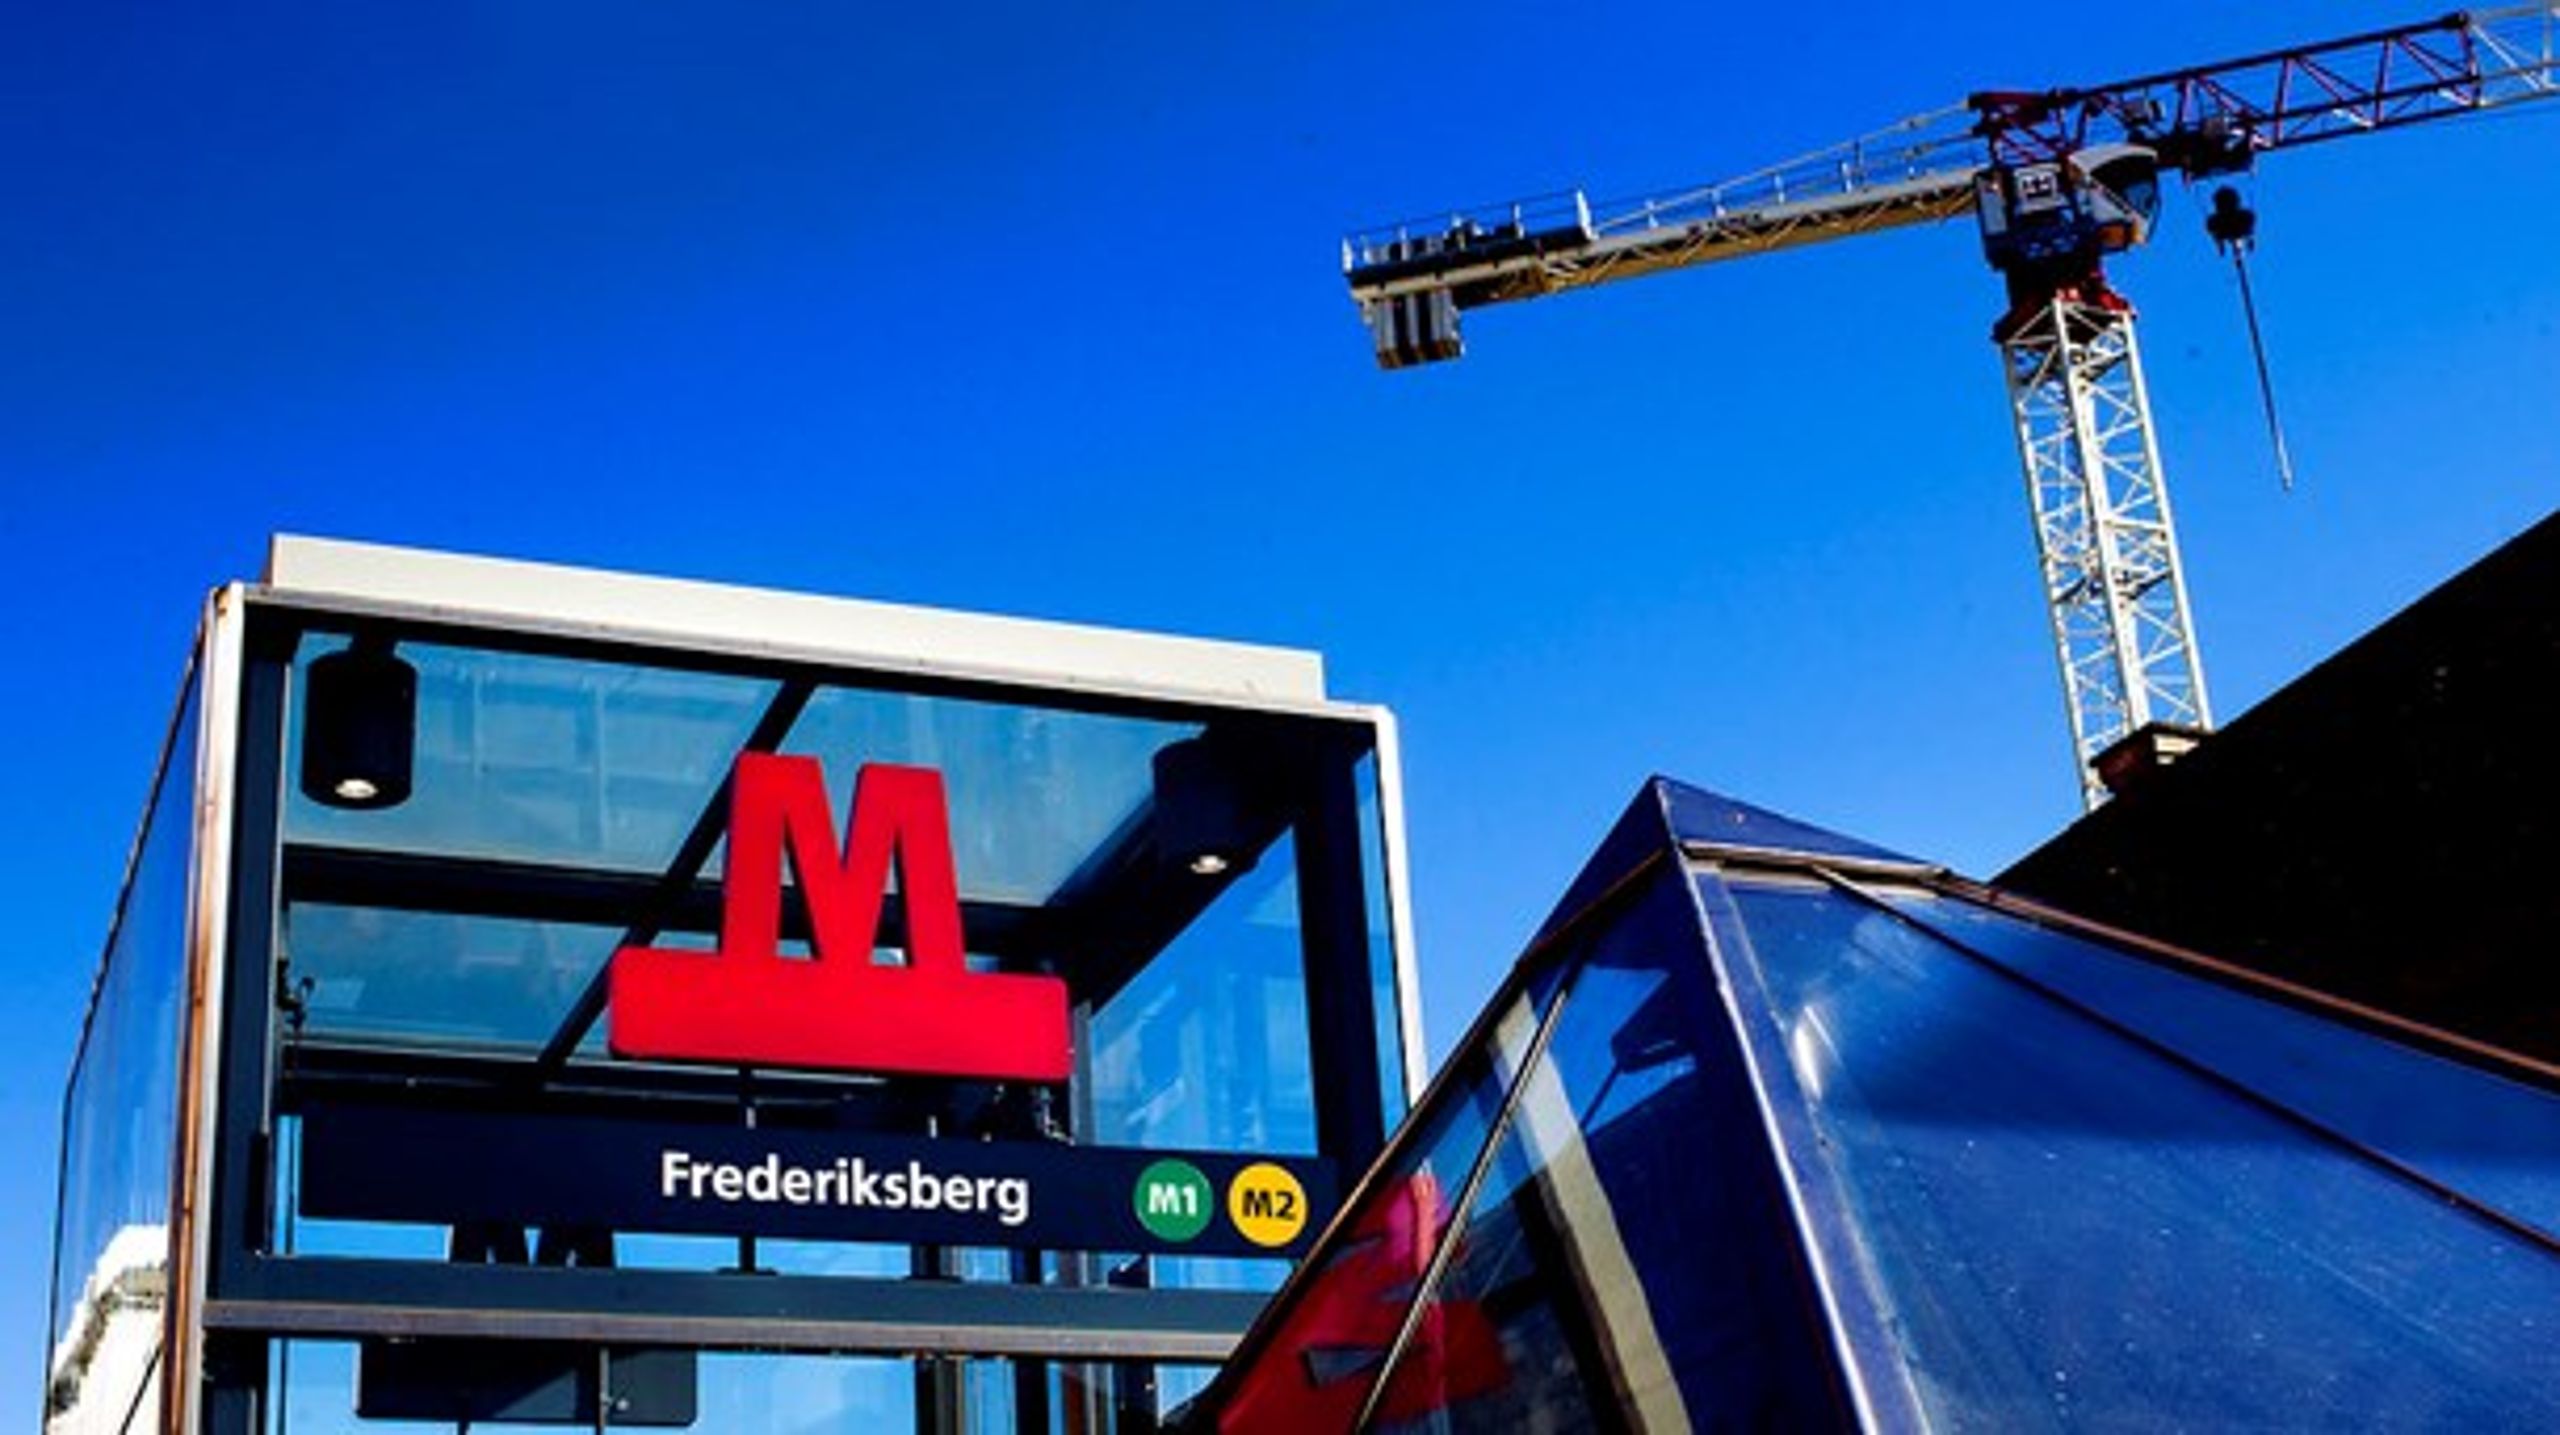 Milliardgælden til metroen fratager de københavnske politikere muligheden for selv at tilrettelægge byudviklingen, mener Josephine Fock (ALT).